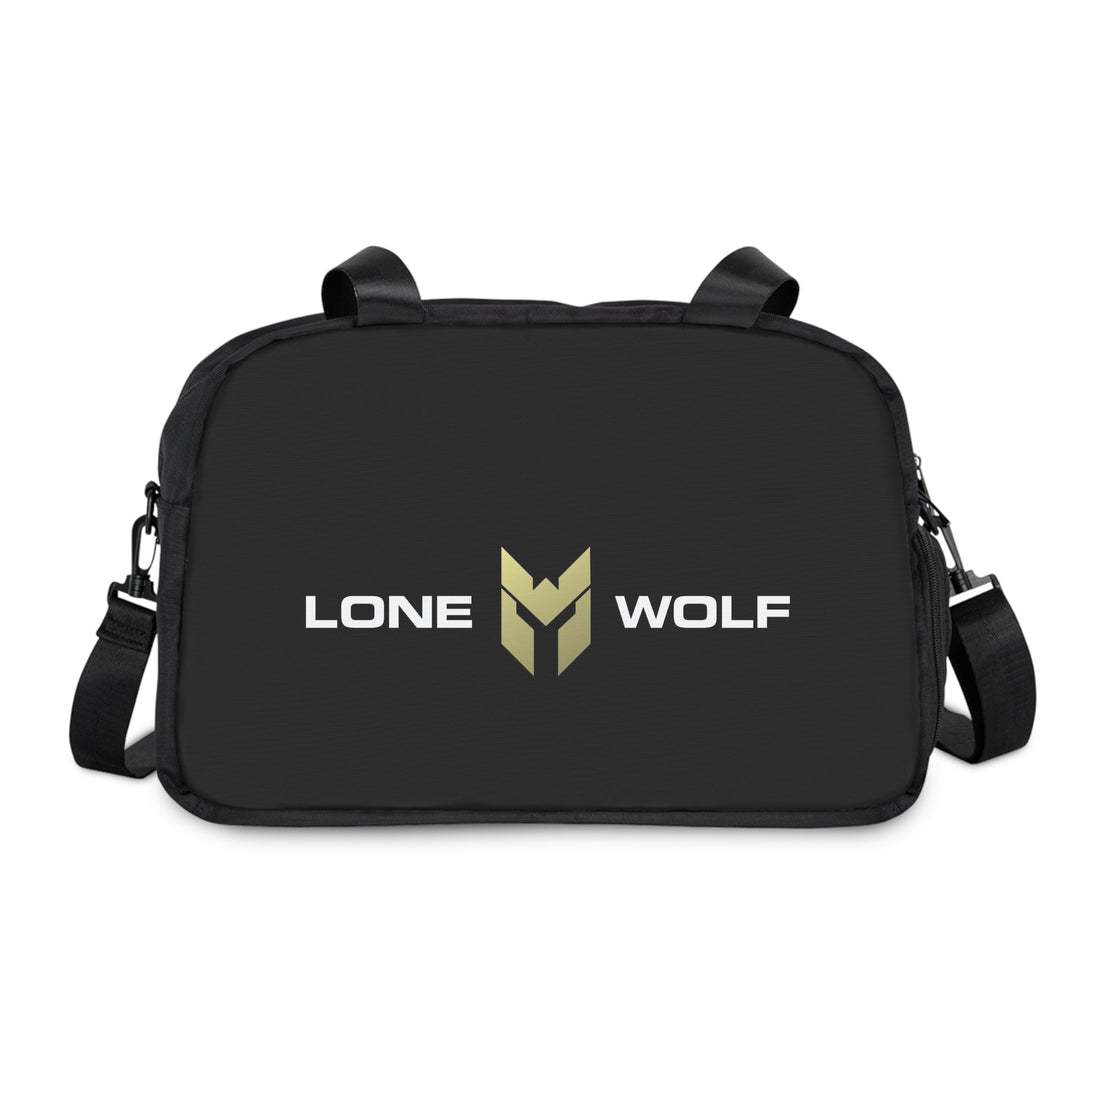 Lonewolf Fitness Gym Bag - THE LONEWOLF BRAND PTY LTD